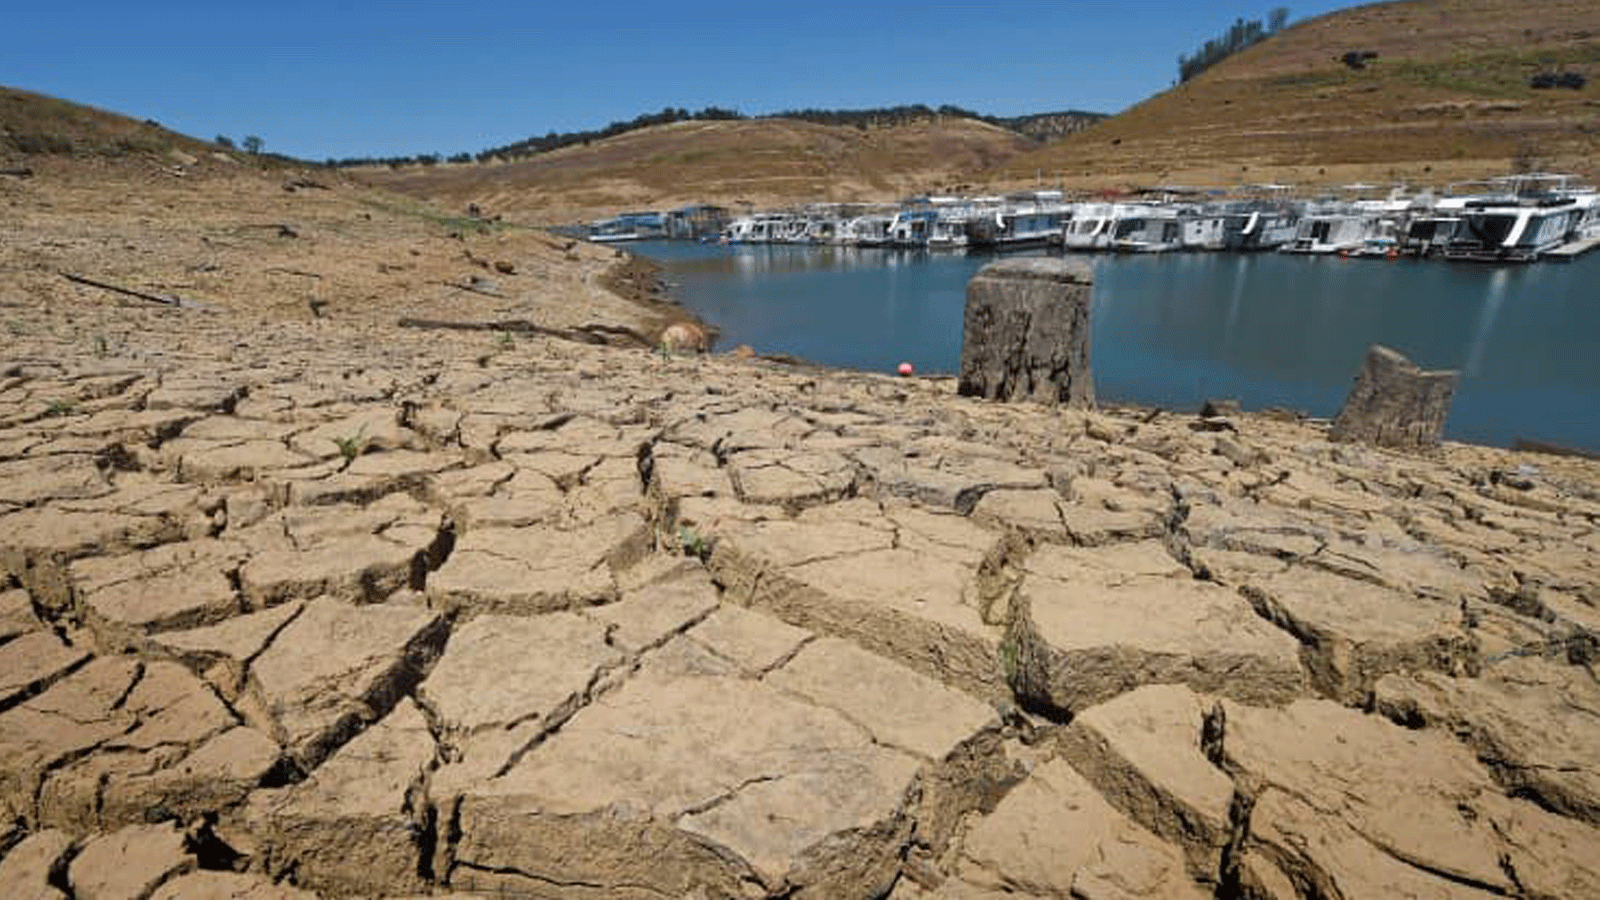 صورة تُظهر الطين الجاف وبقايا المرسى في خزان بحيرة ميلونز الجديدة في كاليفورنيا